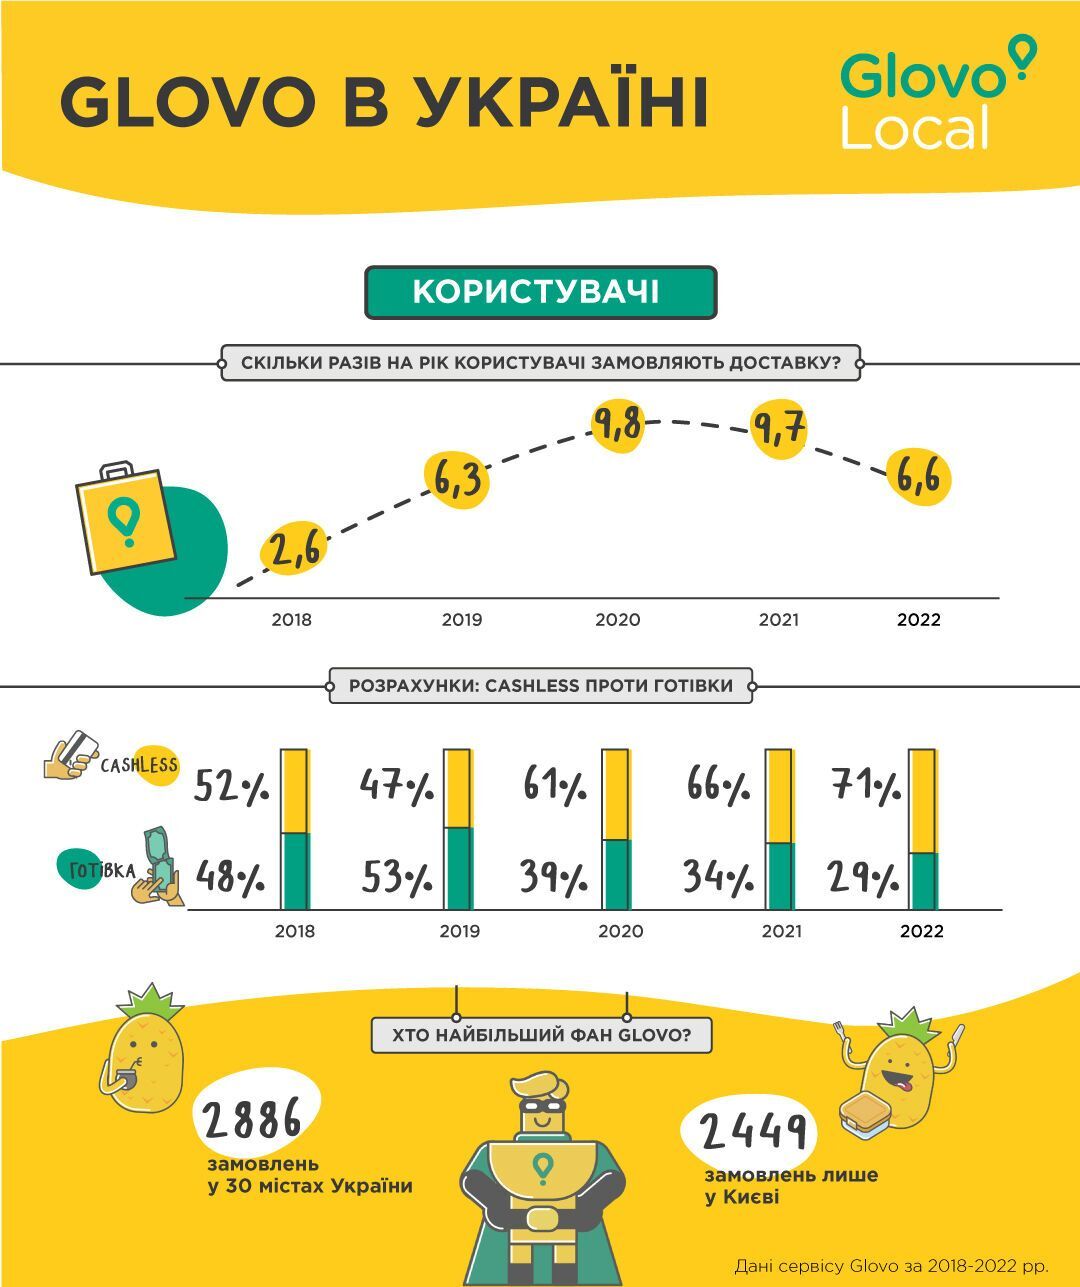 Как предпринимателям увеличить доход в условиях войны: Glovo запустили программу поддержки малого и среднего бизнеса в Украине